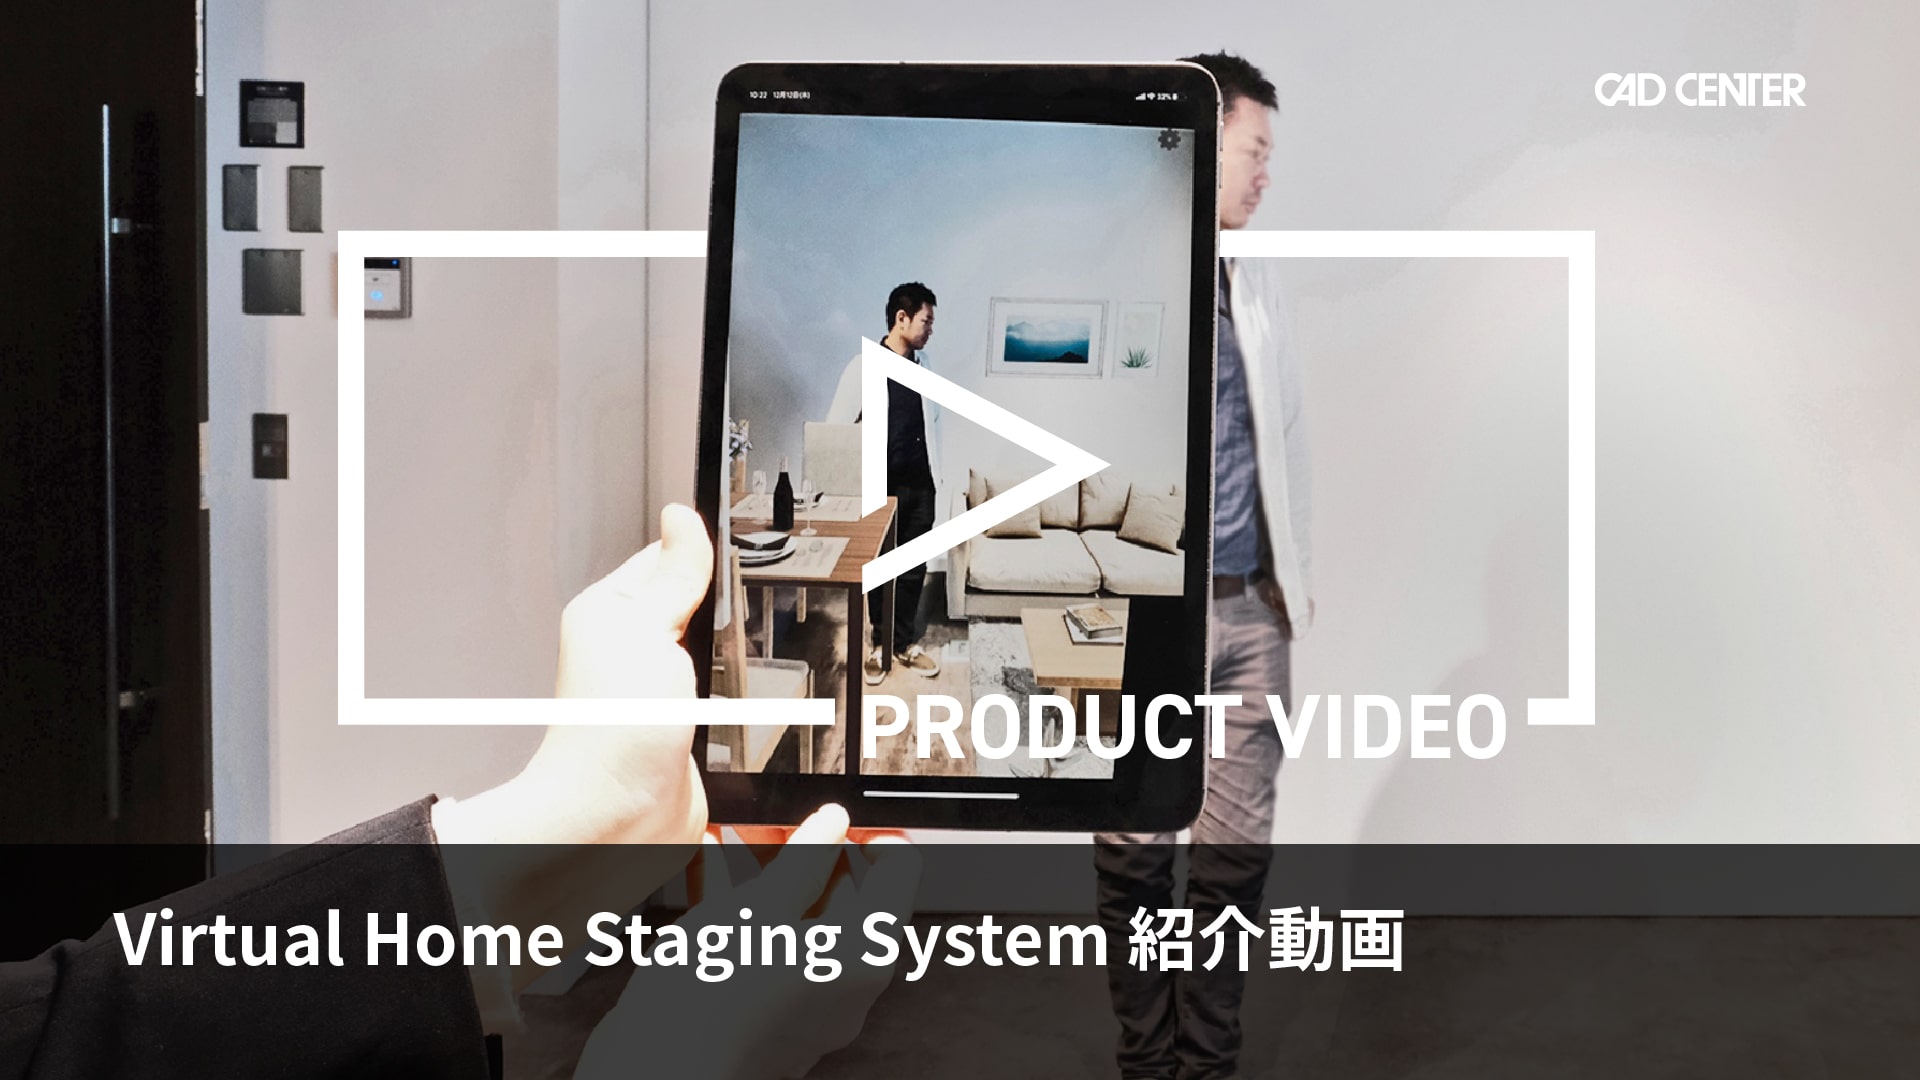 内見時の顧客満足を向上する「Virtual Home Staging System」のサービス紹介です。